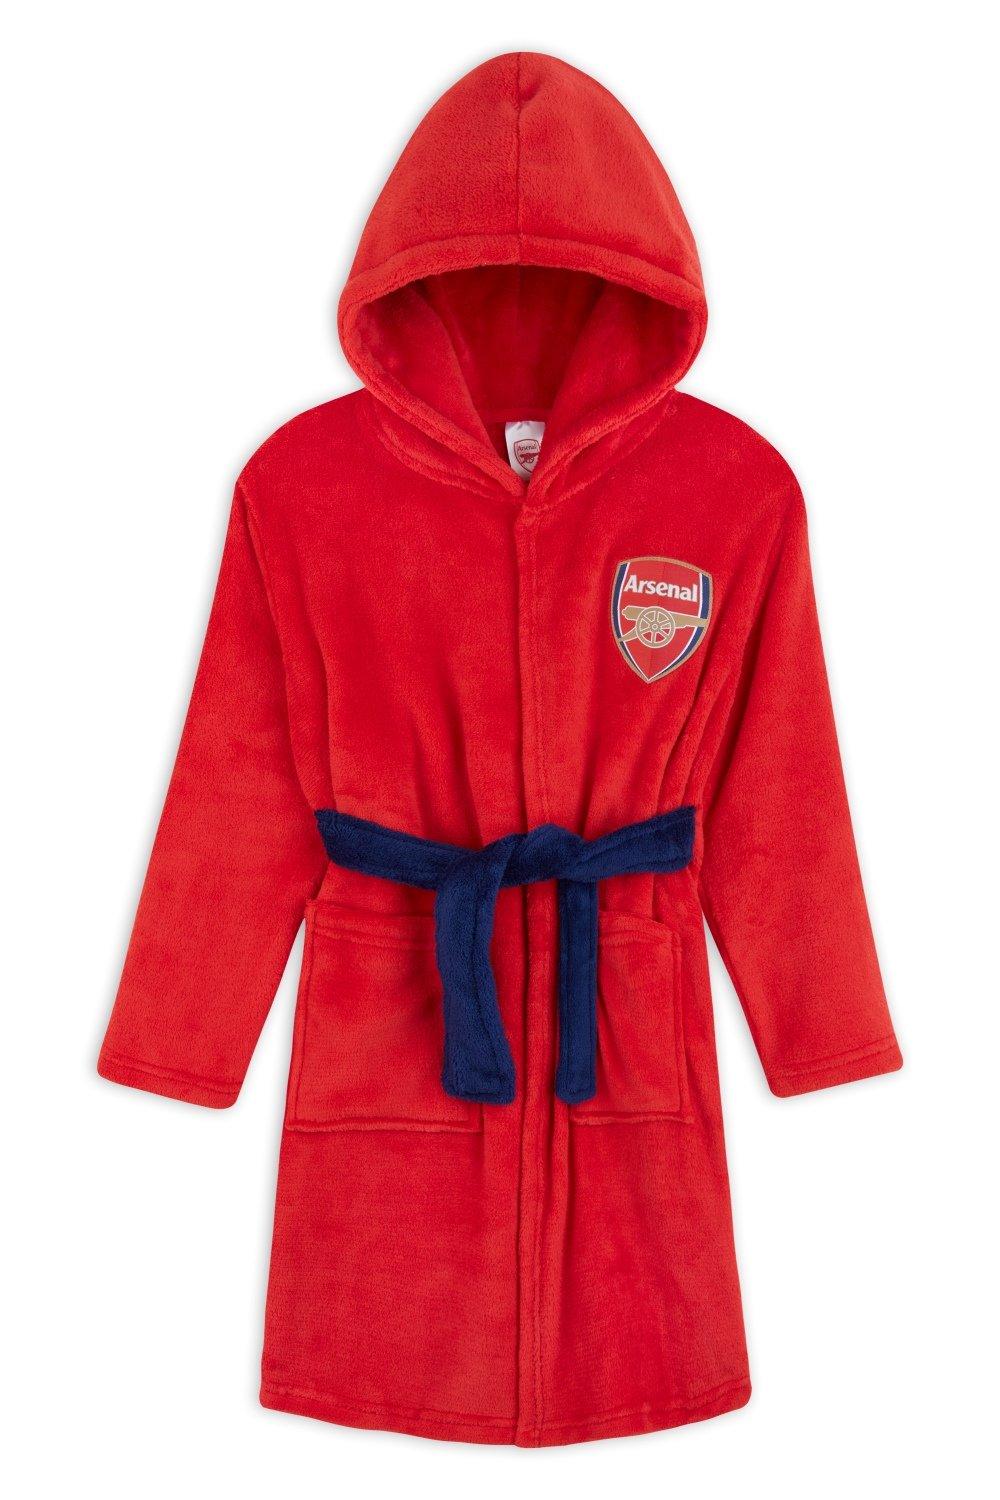 Халат с капюшоном Arsenal FC, красный халат детский с капюшоном принцесса именной